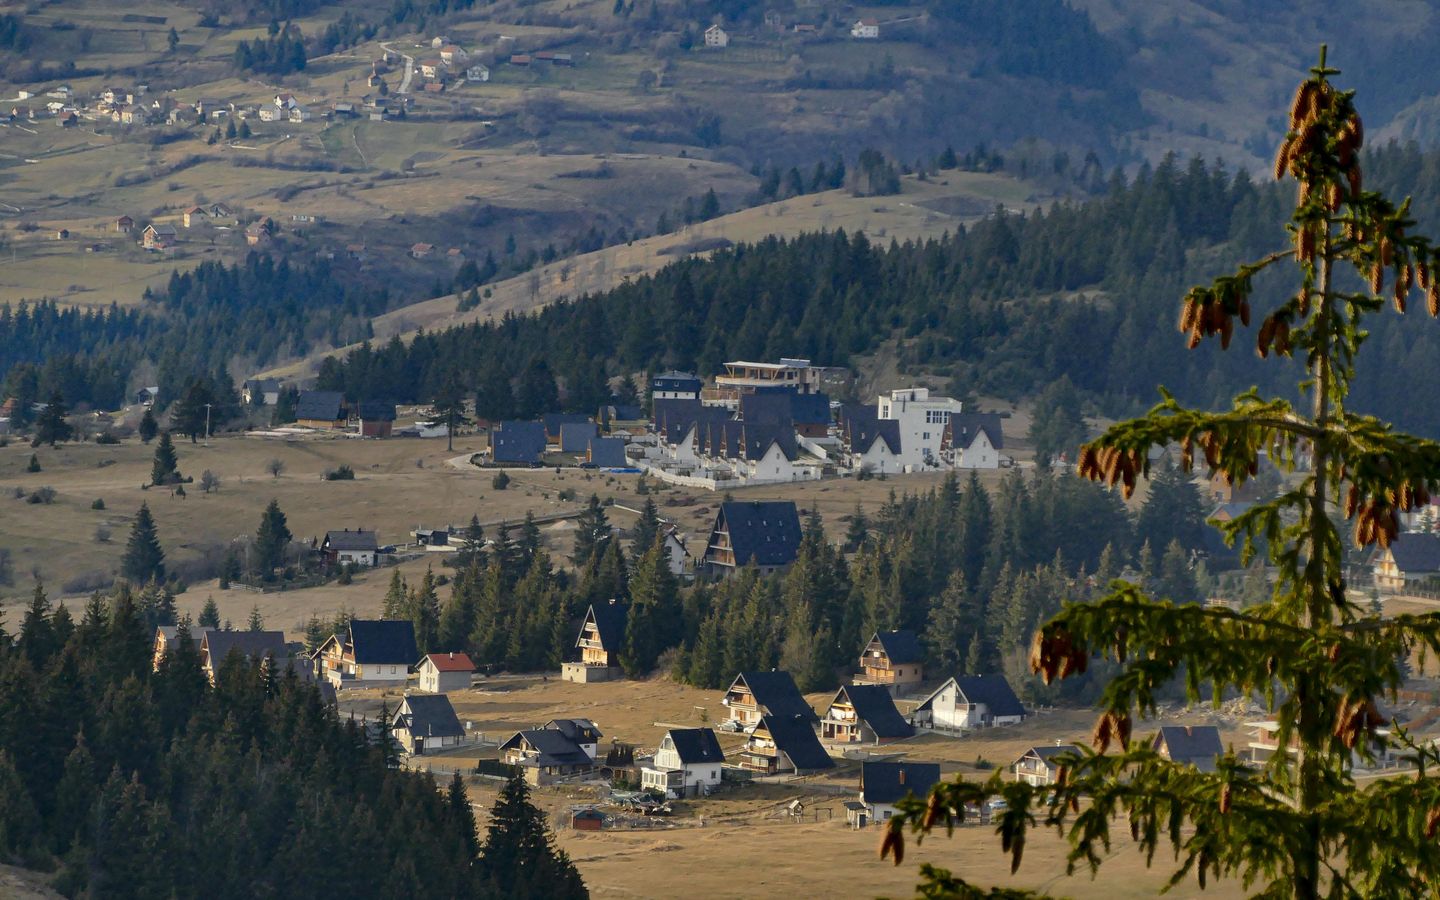 Bosna'daki kayak merkezleri, Avrupa'da rekor sıcak kış görüldüğü için sıkıntı çekiyor